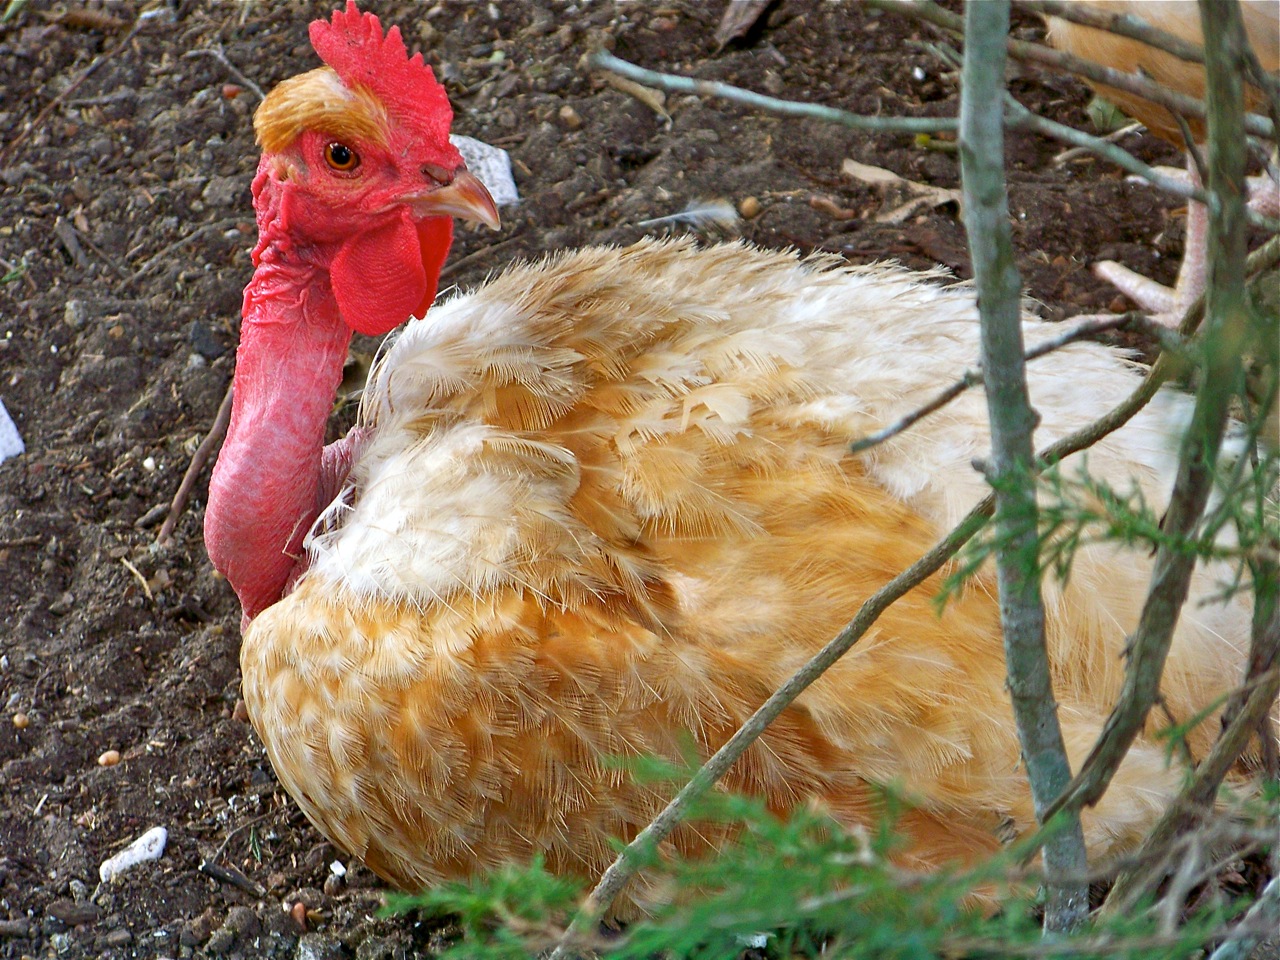 Turken chicken breed